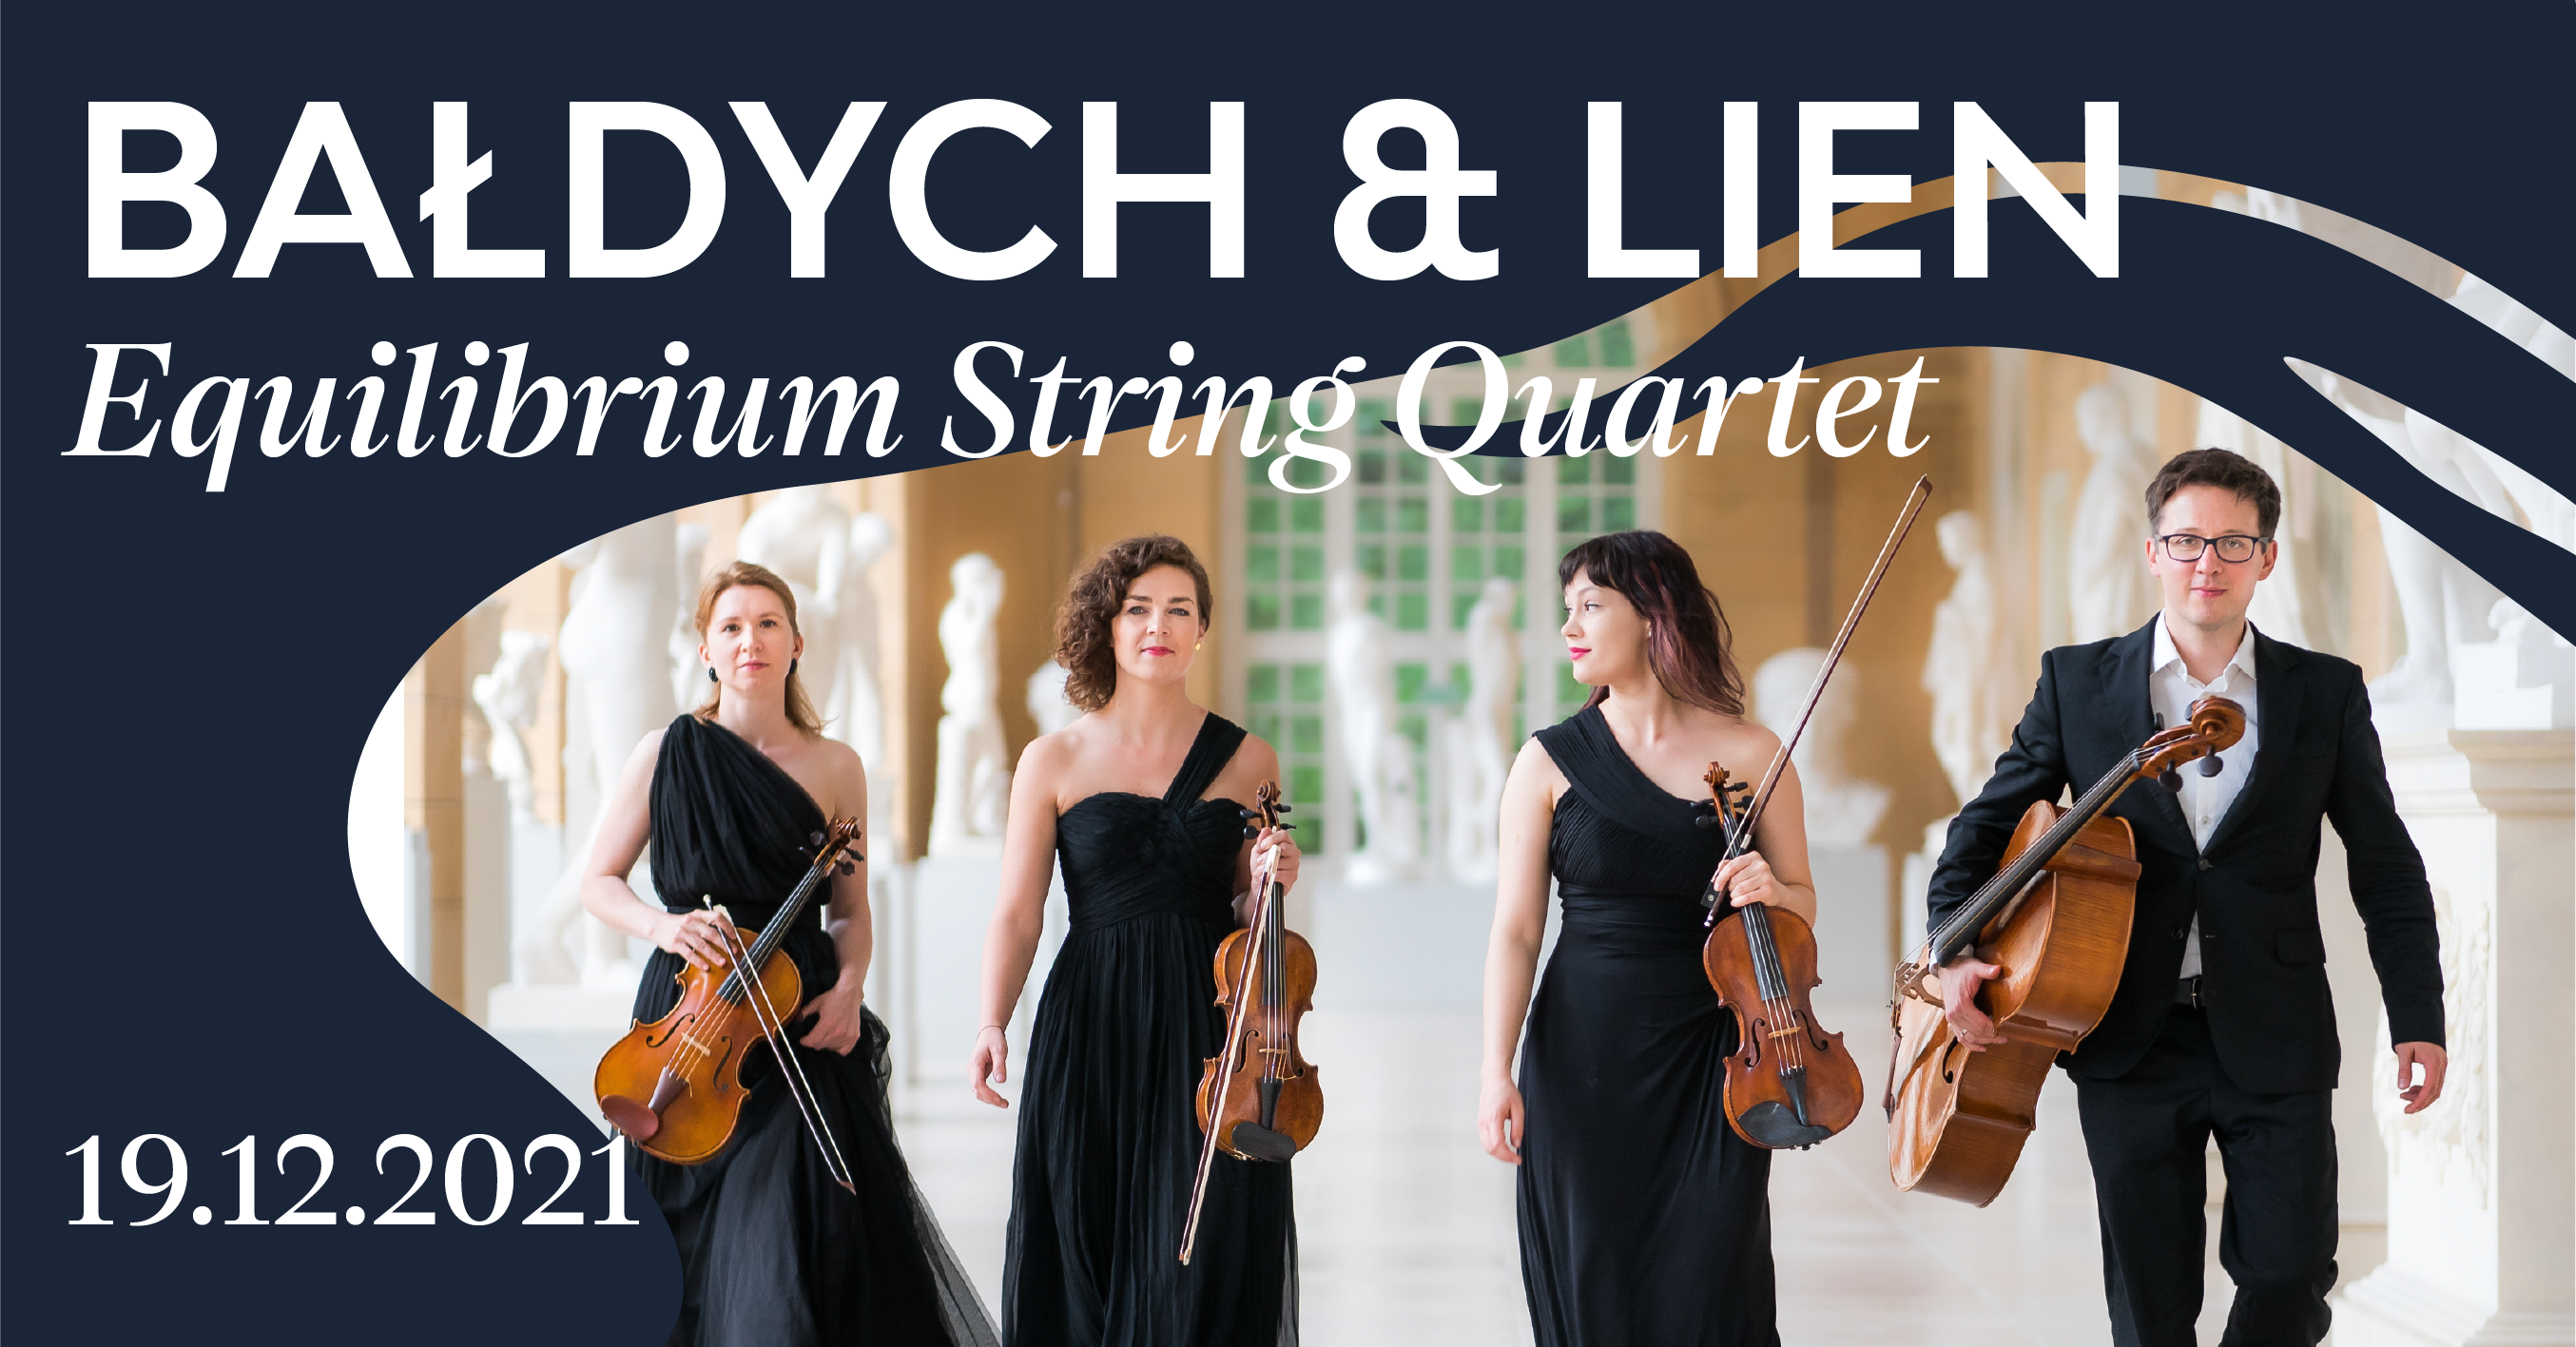  Adam Bałdych & Helge Lien/ Equilibrium String Quartet - koncert przeniesiony na inny termin Na zdjęciu plakat koncertu